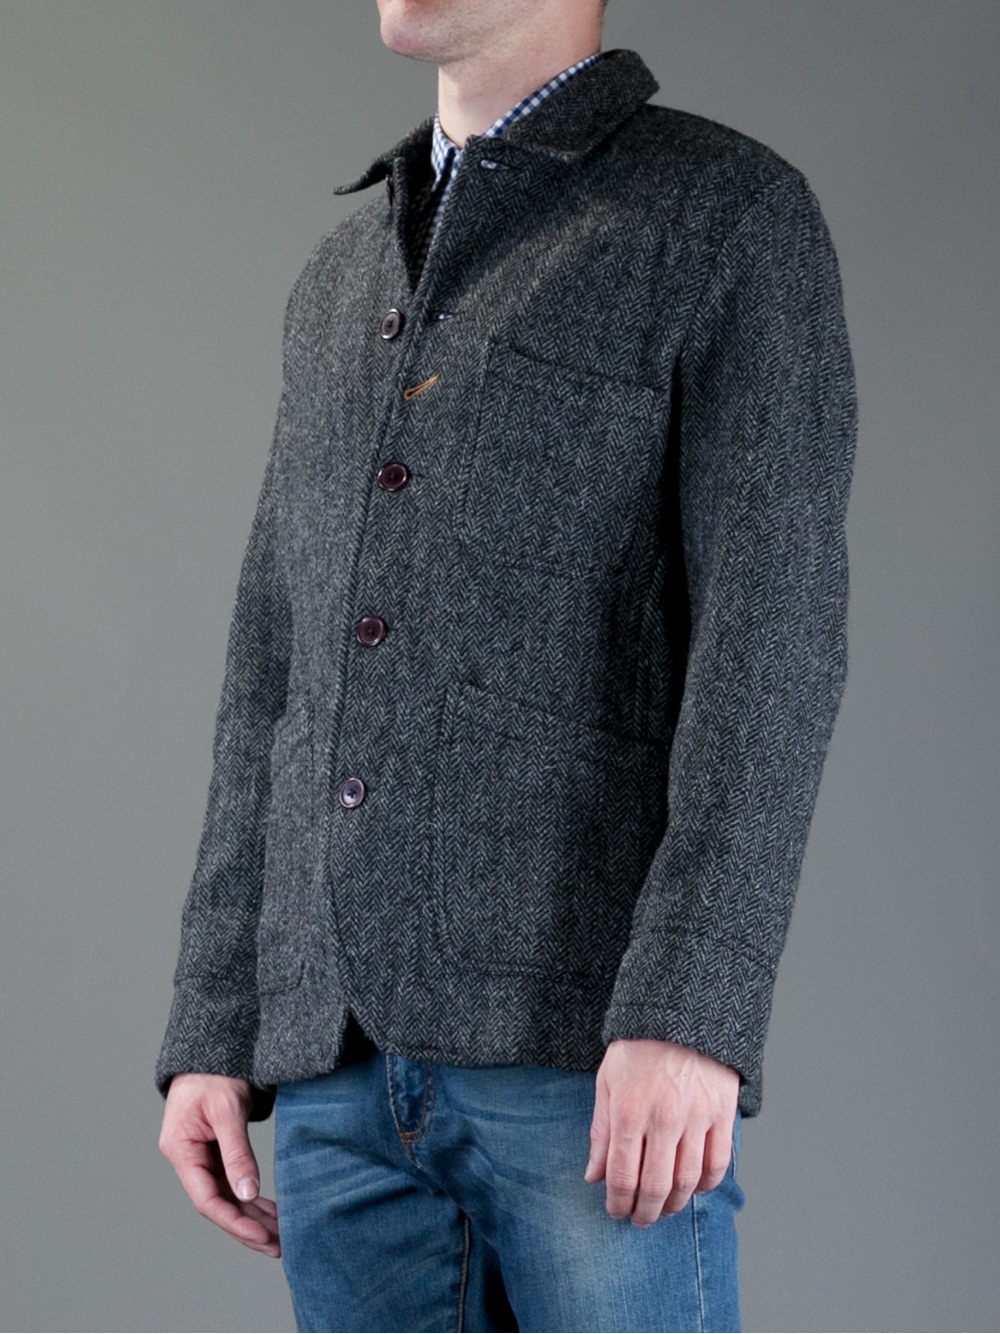 Lyst - Universal Works Bakers Herringbone Jacket in Gray for Men